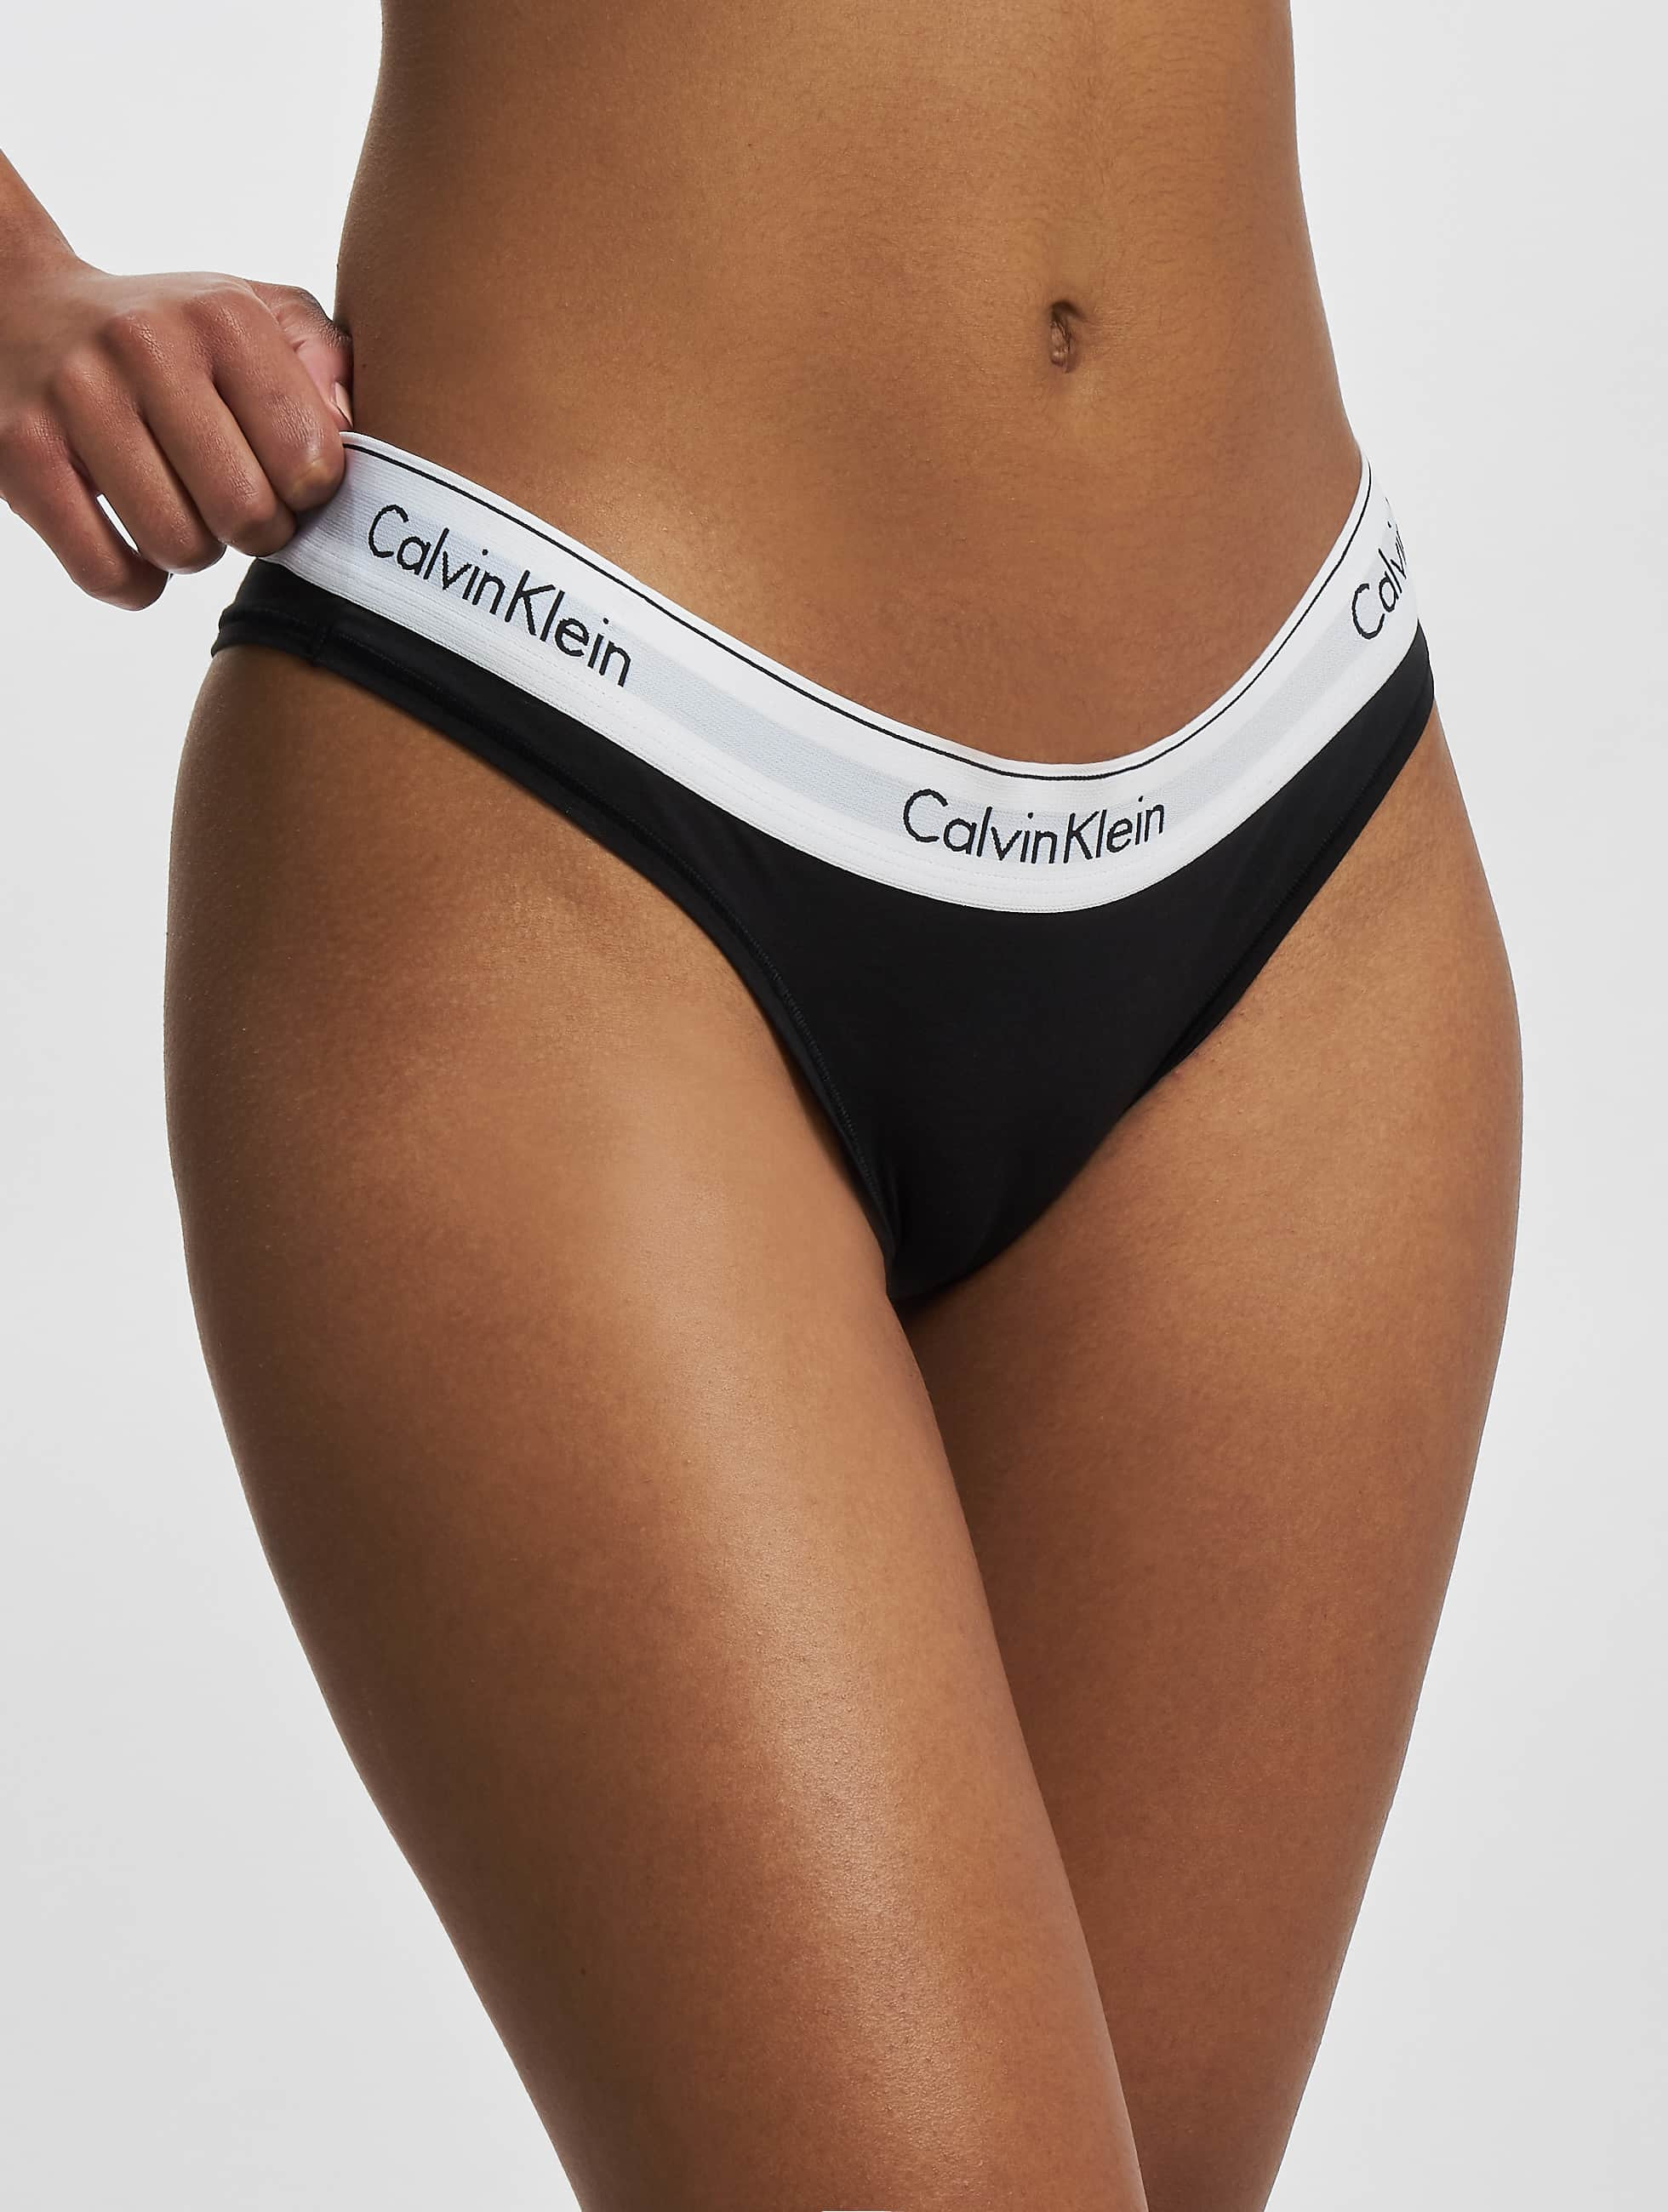 Correspondentie Kwestie Rondsel Calvin Klein Damen Unterwäsche Underwear Brazilian in schwarz 972280